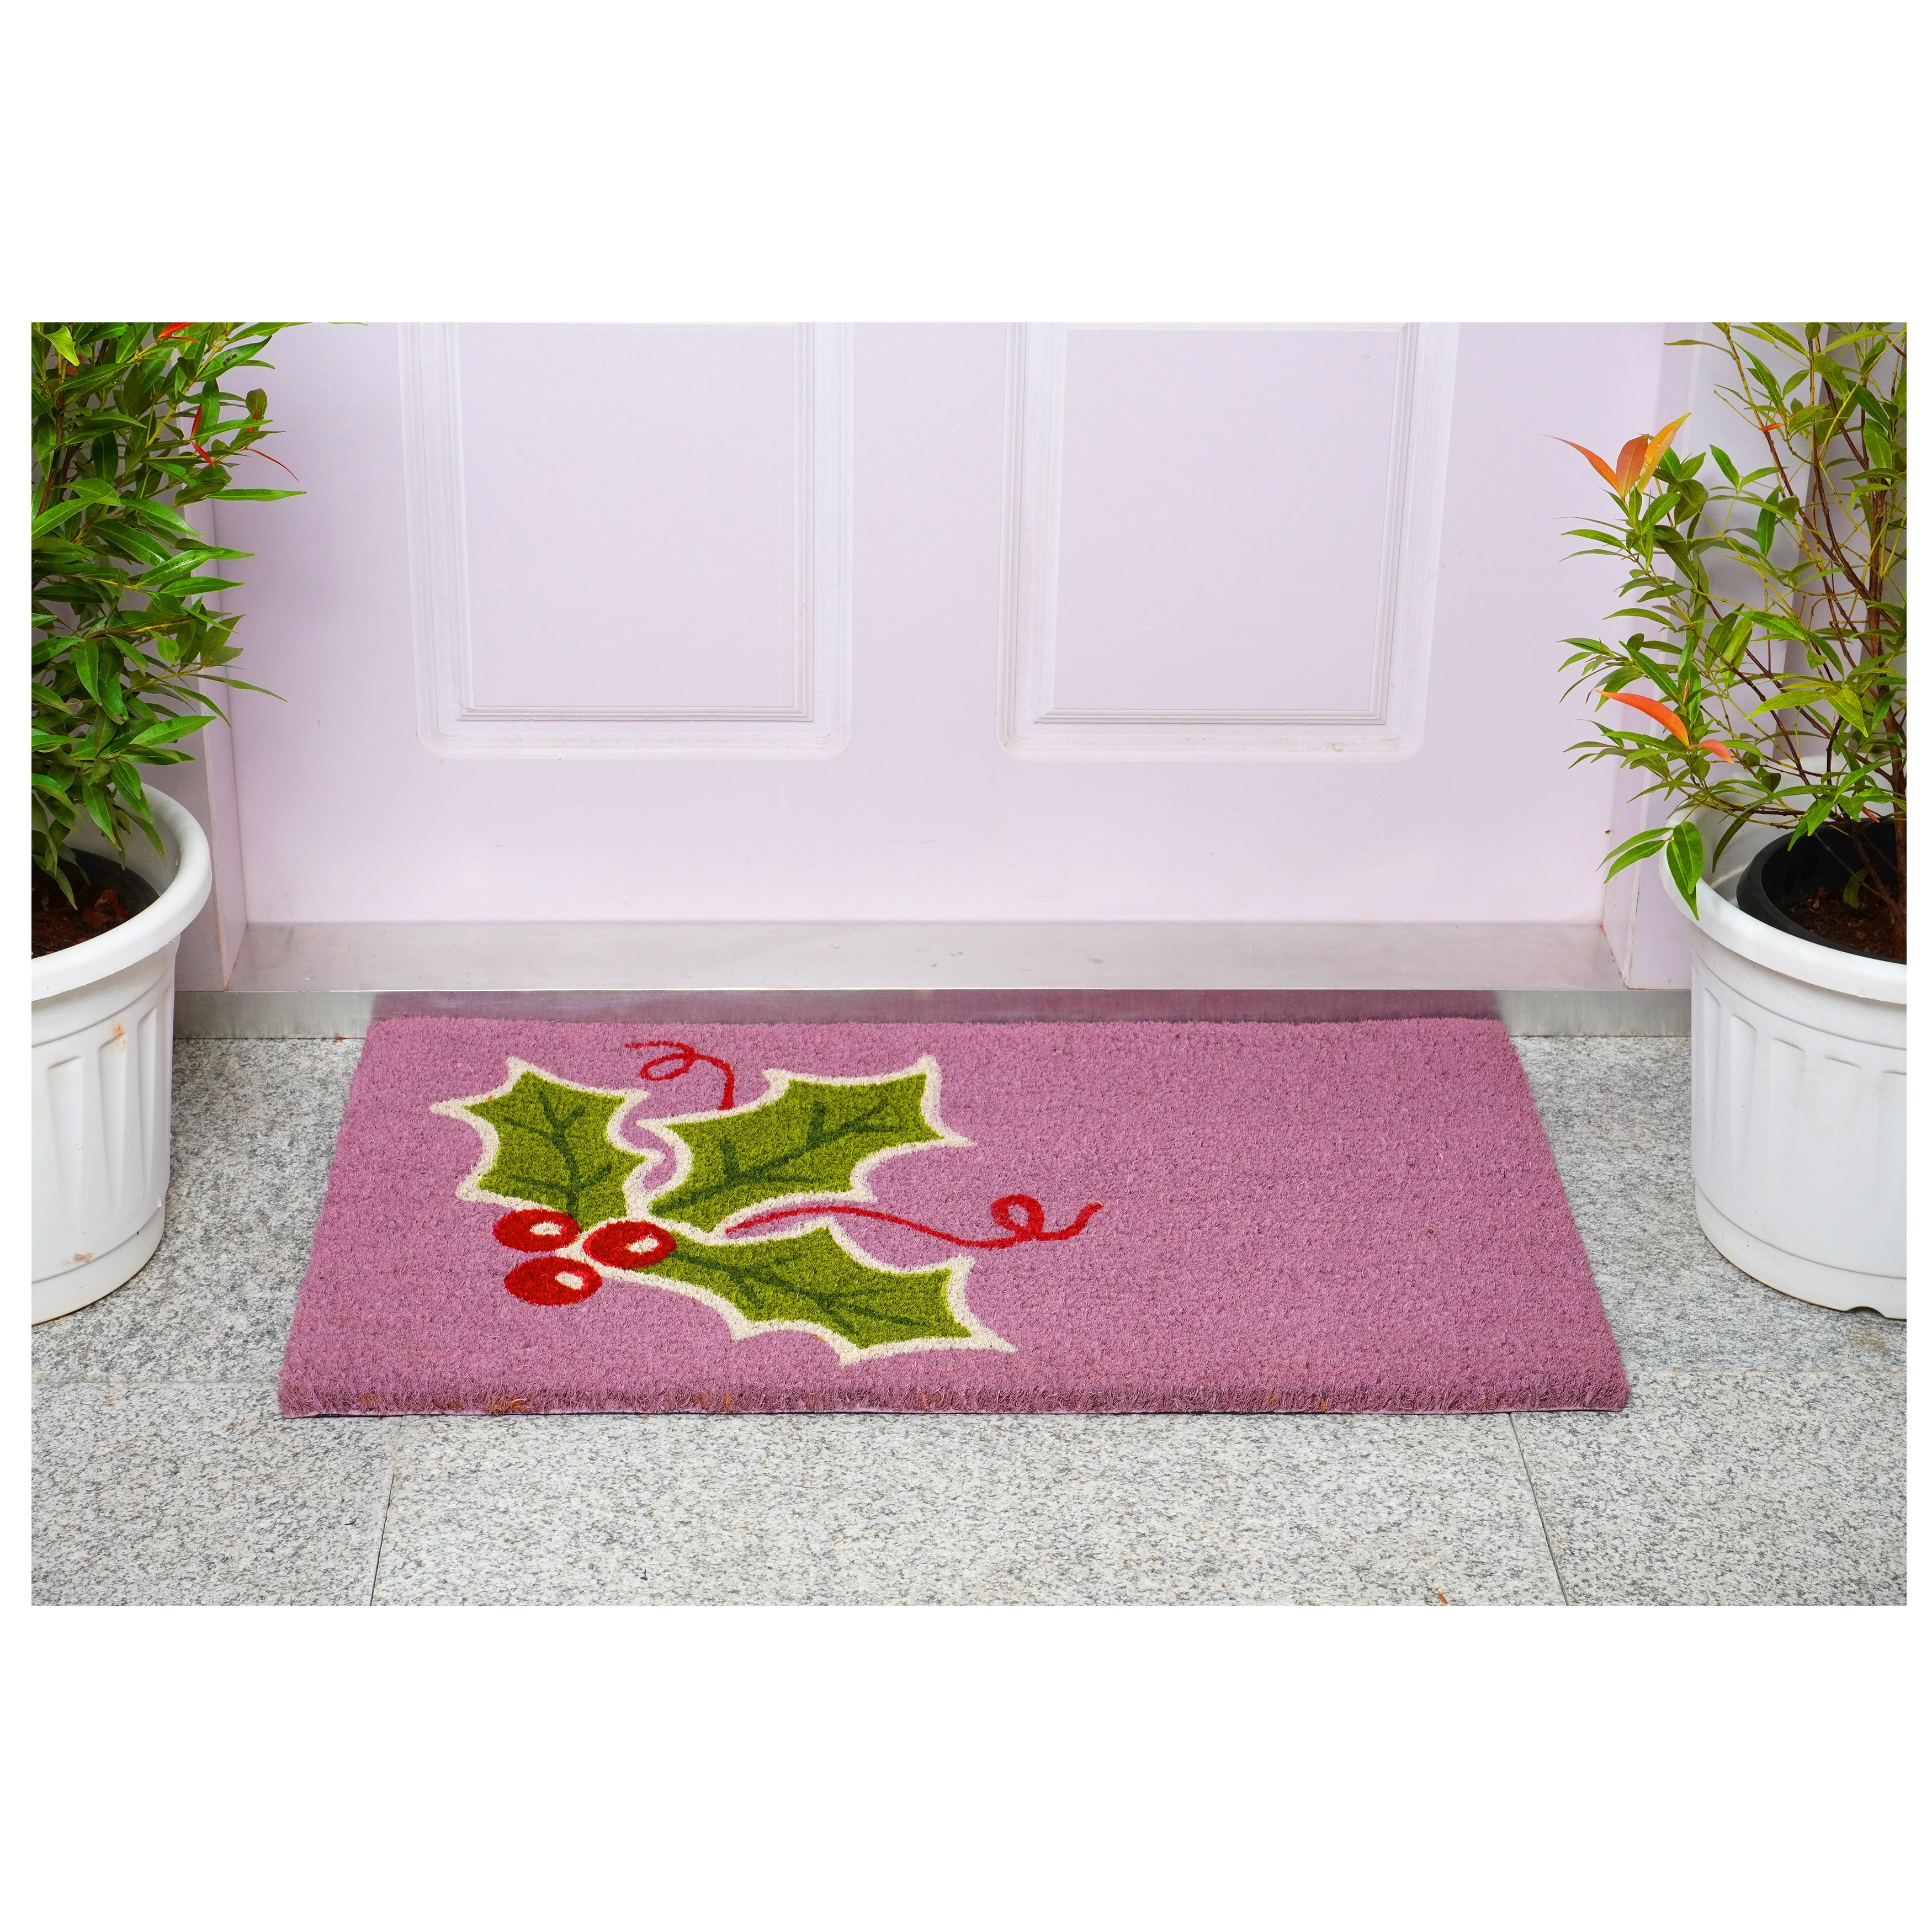 Calloway Mills 122253672 Winter Wonderland Doormat, 3' x 6